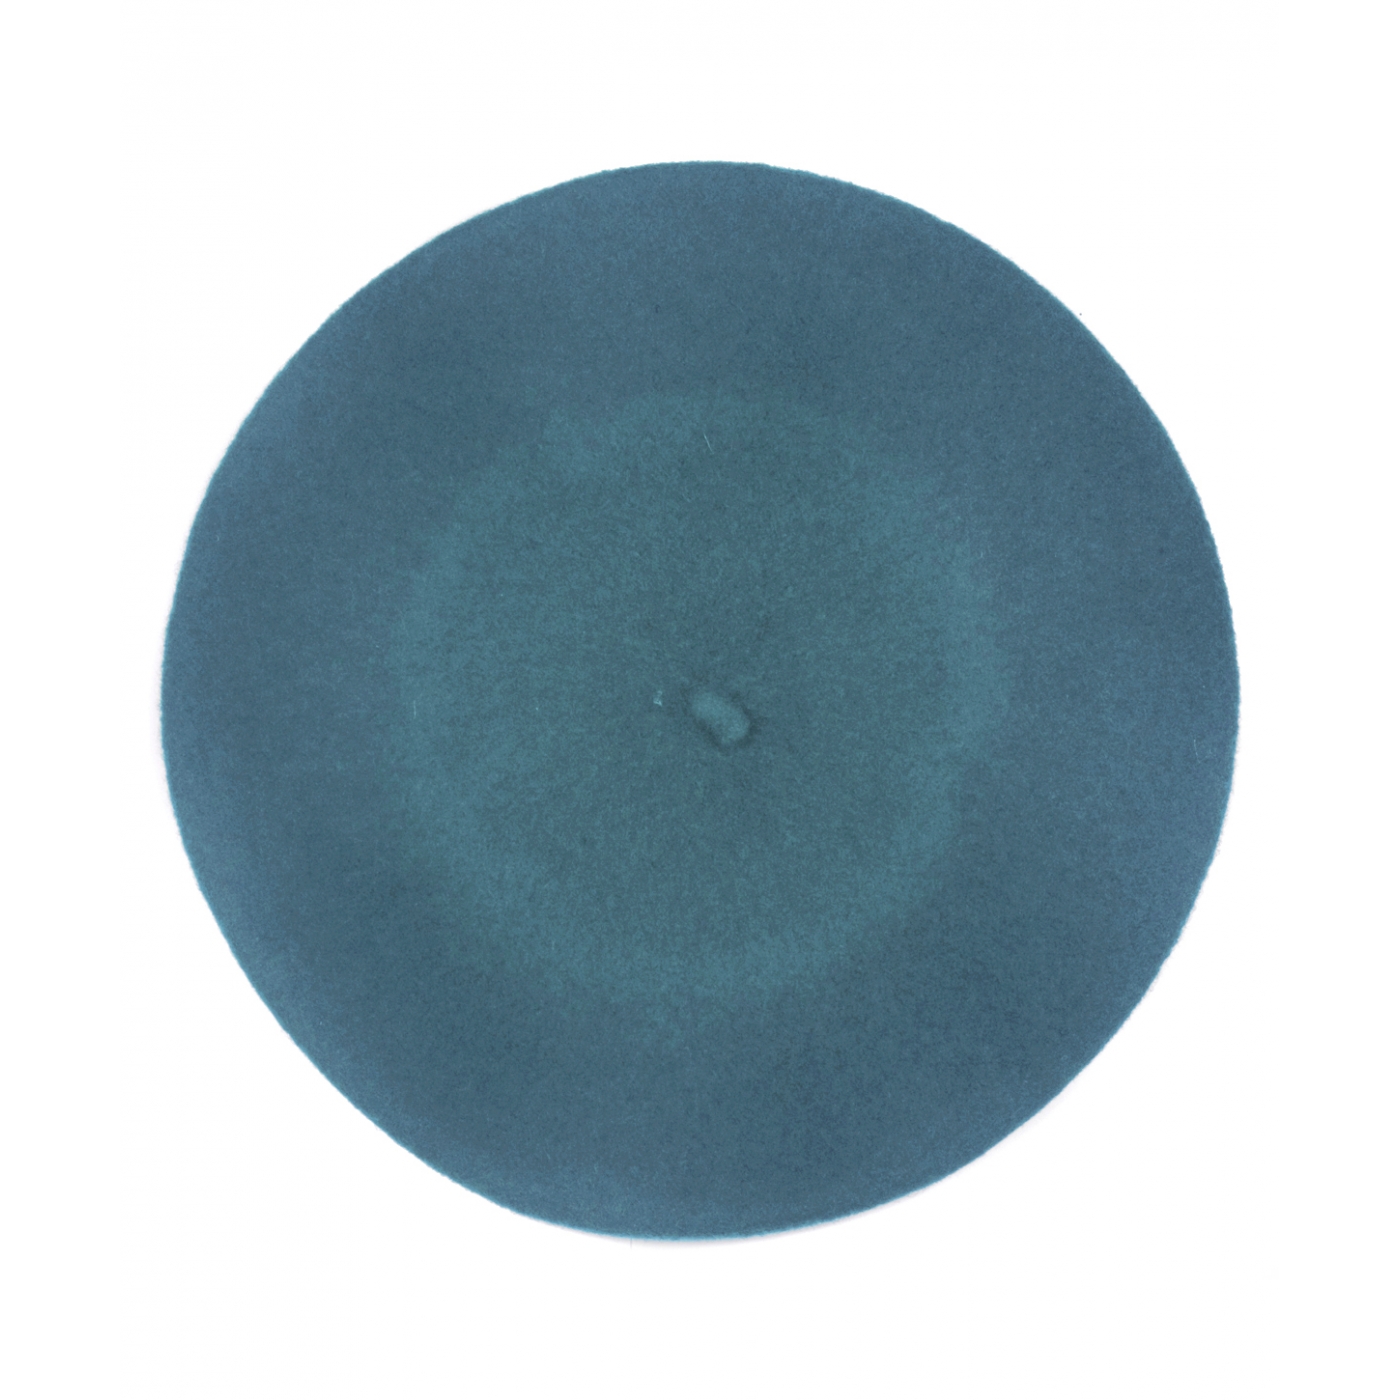 Klasyczny damski beret wełniany – turkusowy niebieski